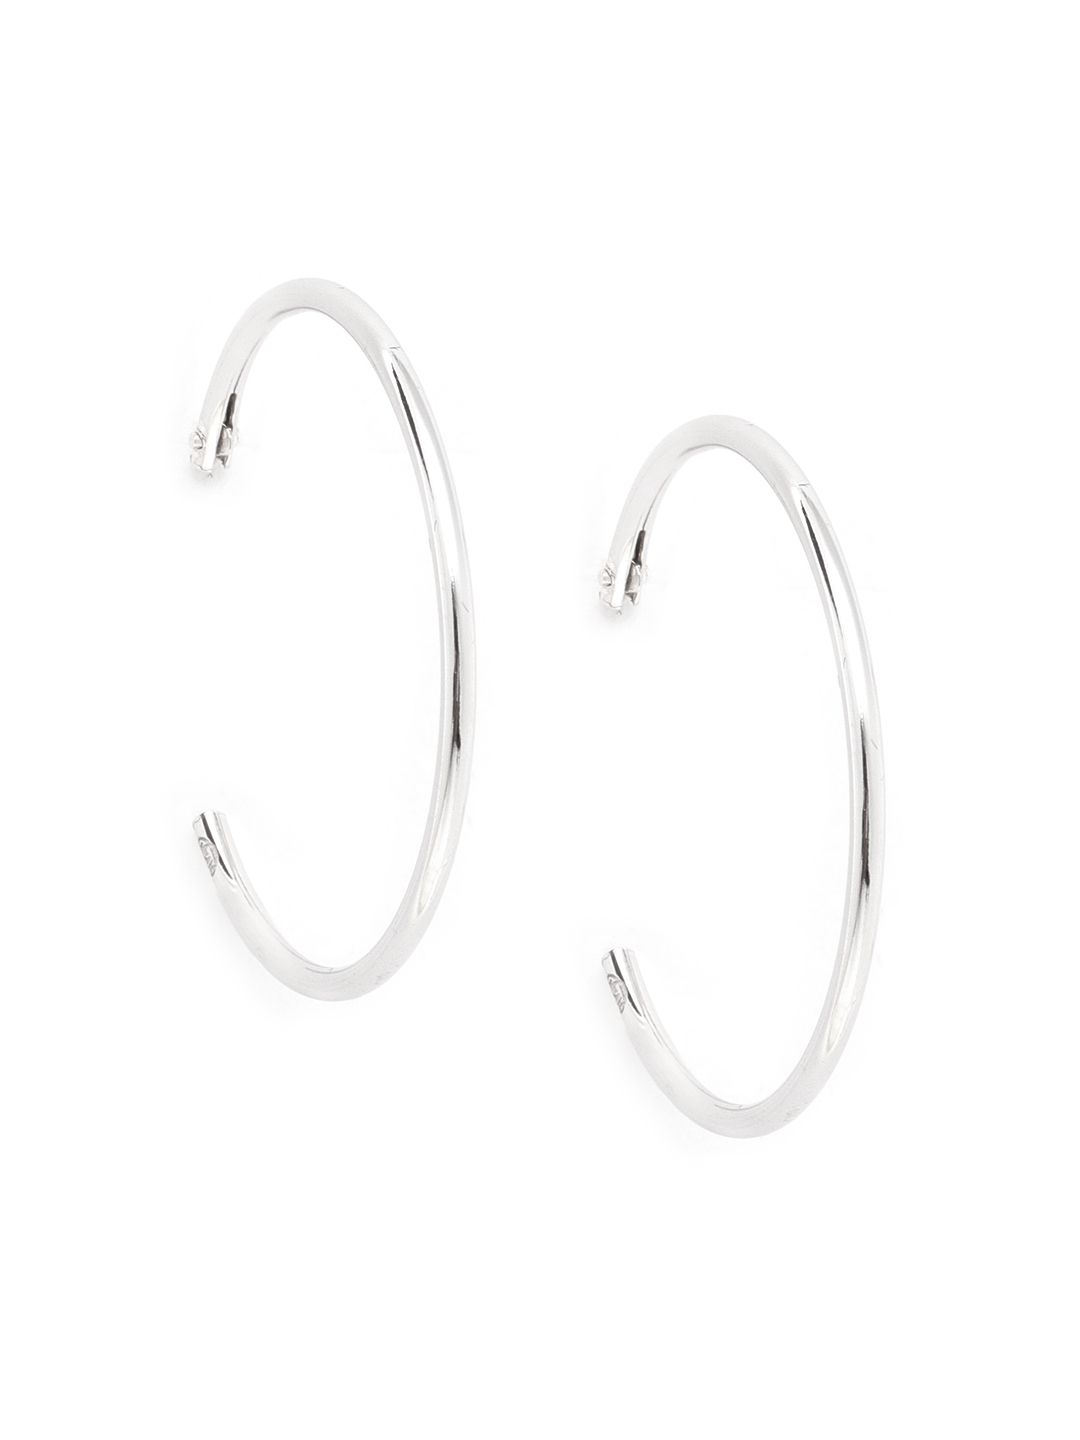 Carlton London 925 Sterling Silver- Rhodium-Plated Circular Hoop Earrings Price in India